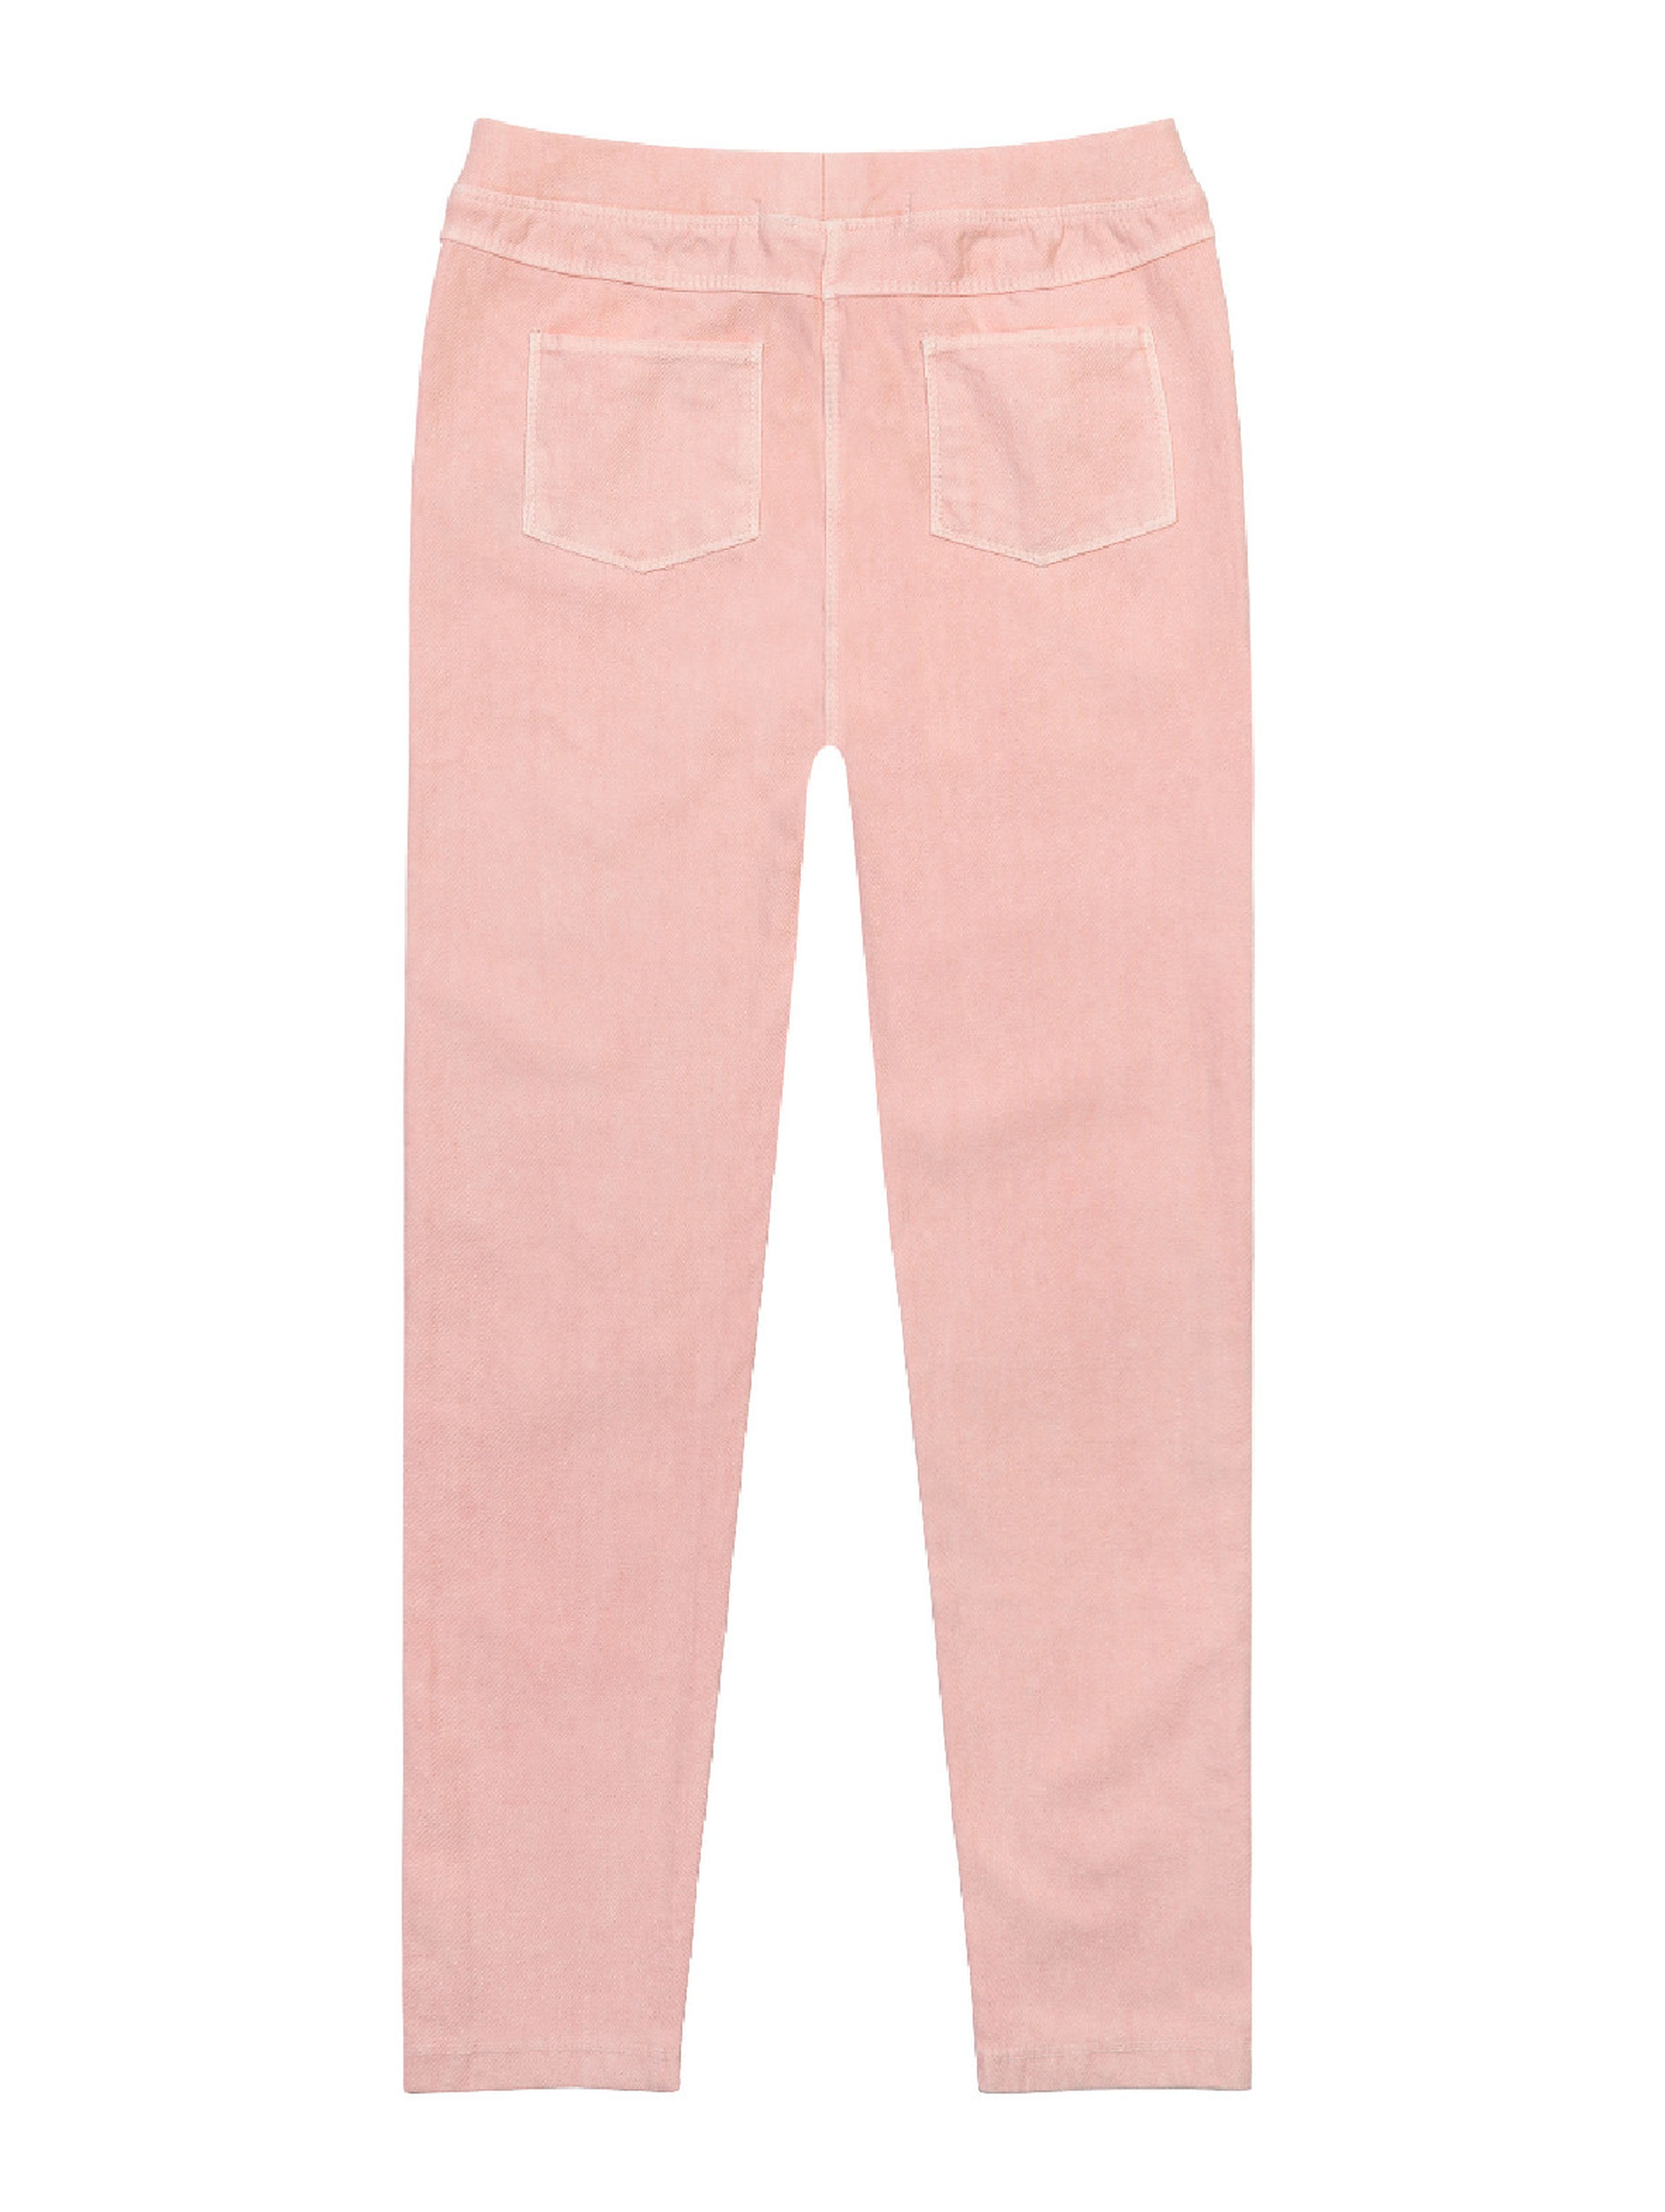 Różowe spodnie dla dziewczynki typu jeginnsy